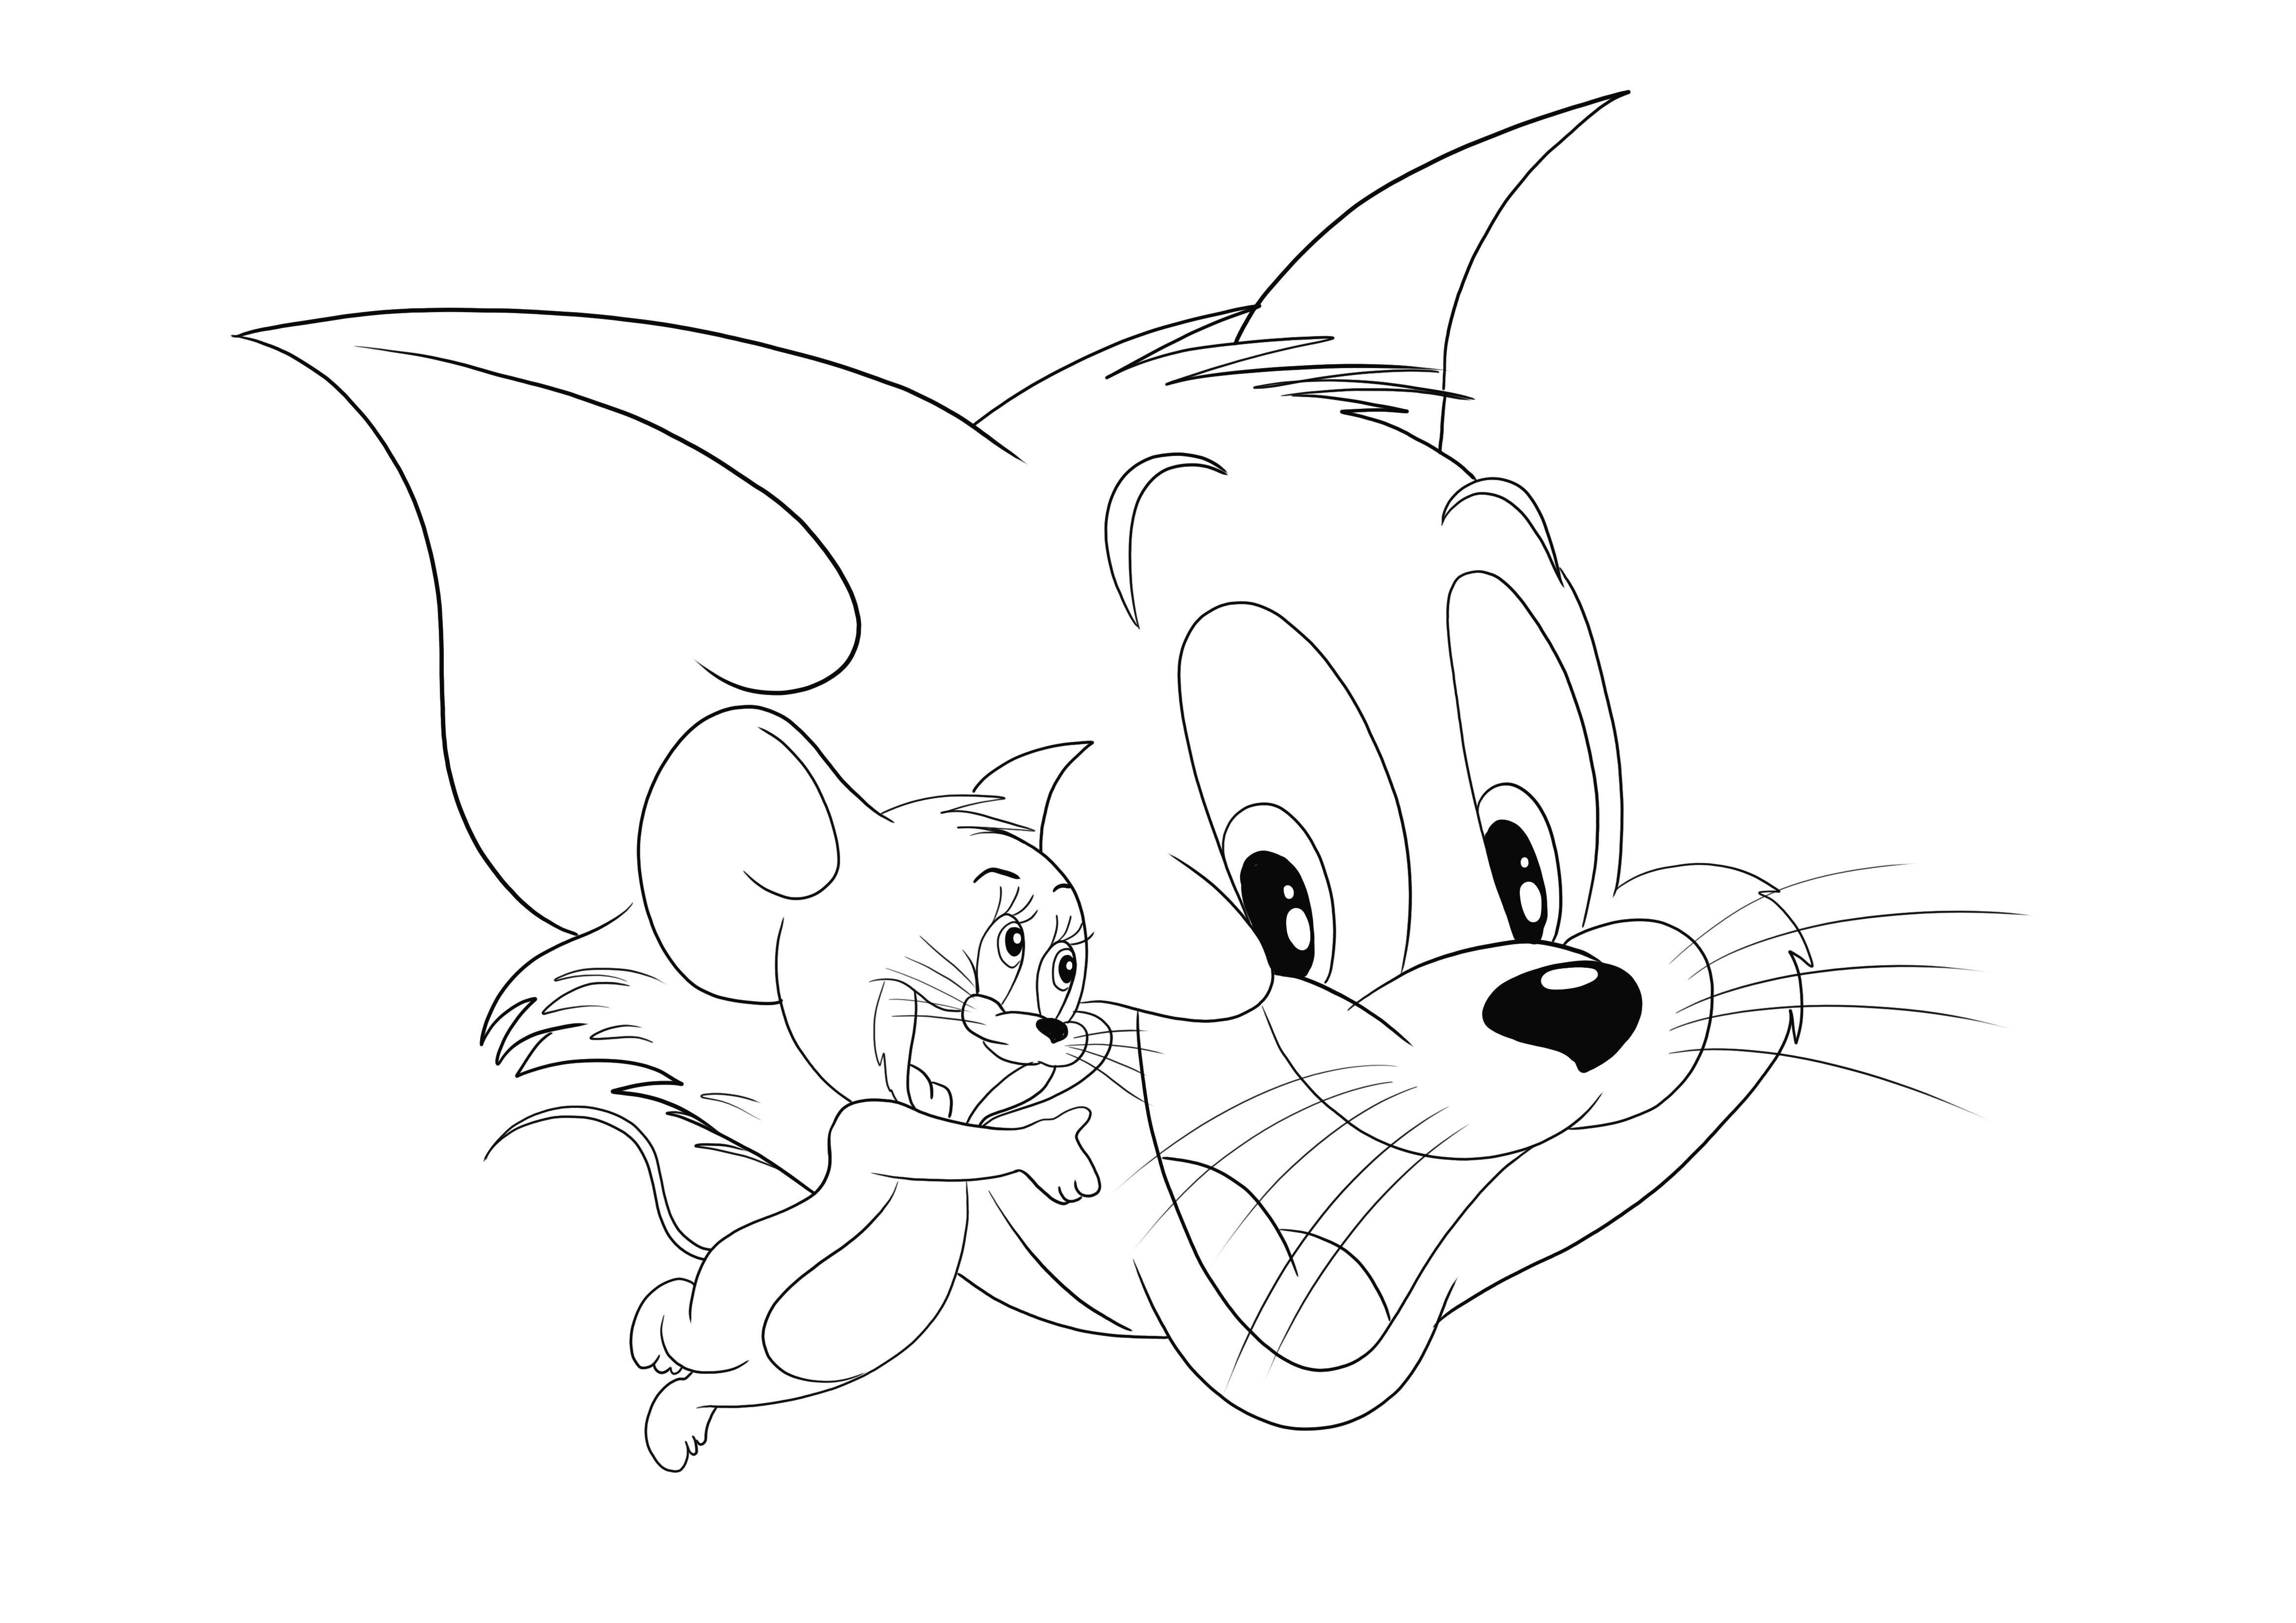 Tom e Jerry e le loro faccine felici aspettano di essere scaricati e colorati dai loro piccoli fan